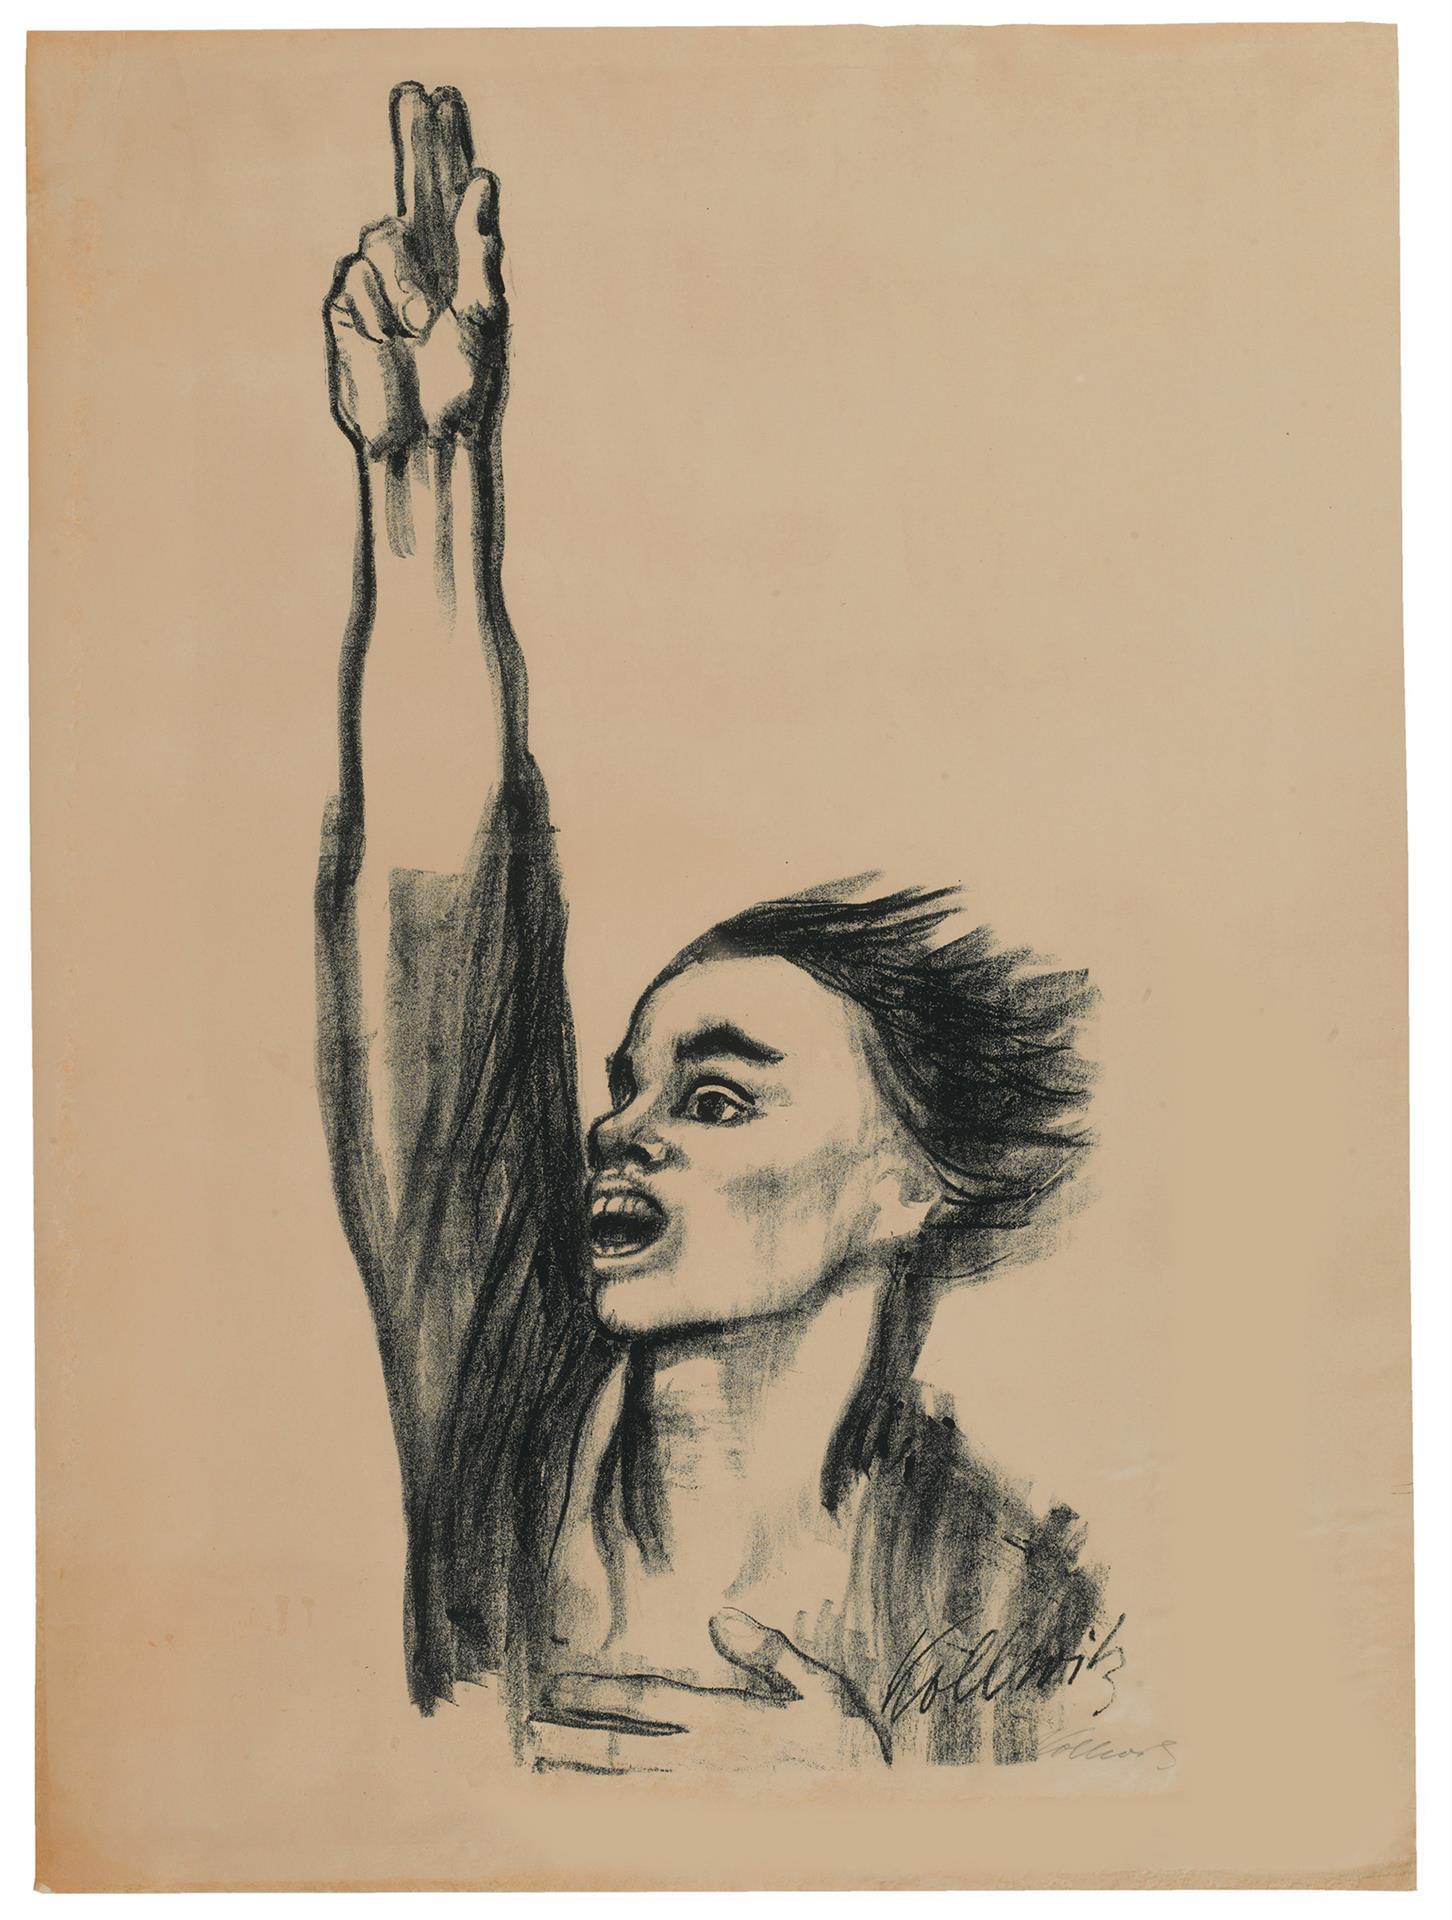 Käthe Kollwitz, »Nie wieder Krieg«, 1924, Kreide- und Pinsellithographie, vor der Schrift, jedoch mit lithographierter Signatur, Kn 205 II b © Käthe Kollwitz Museum Köln